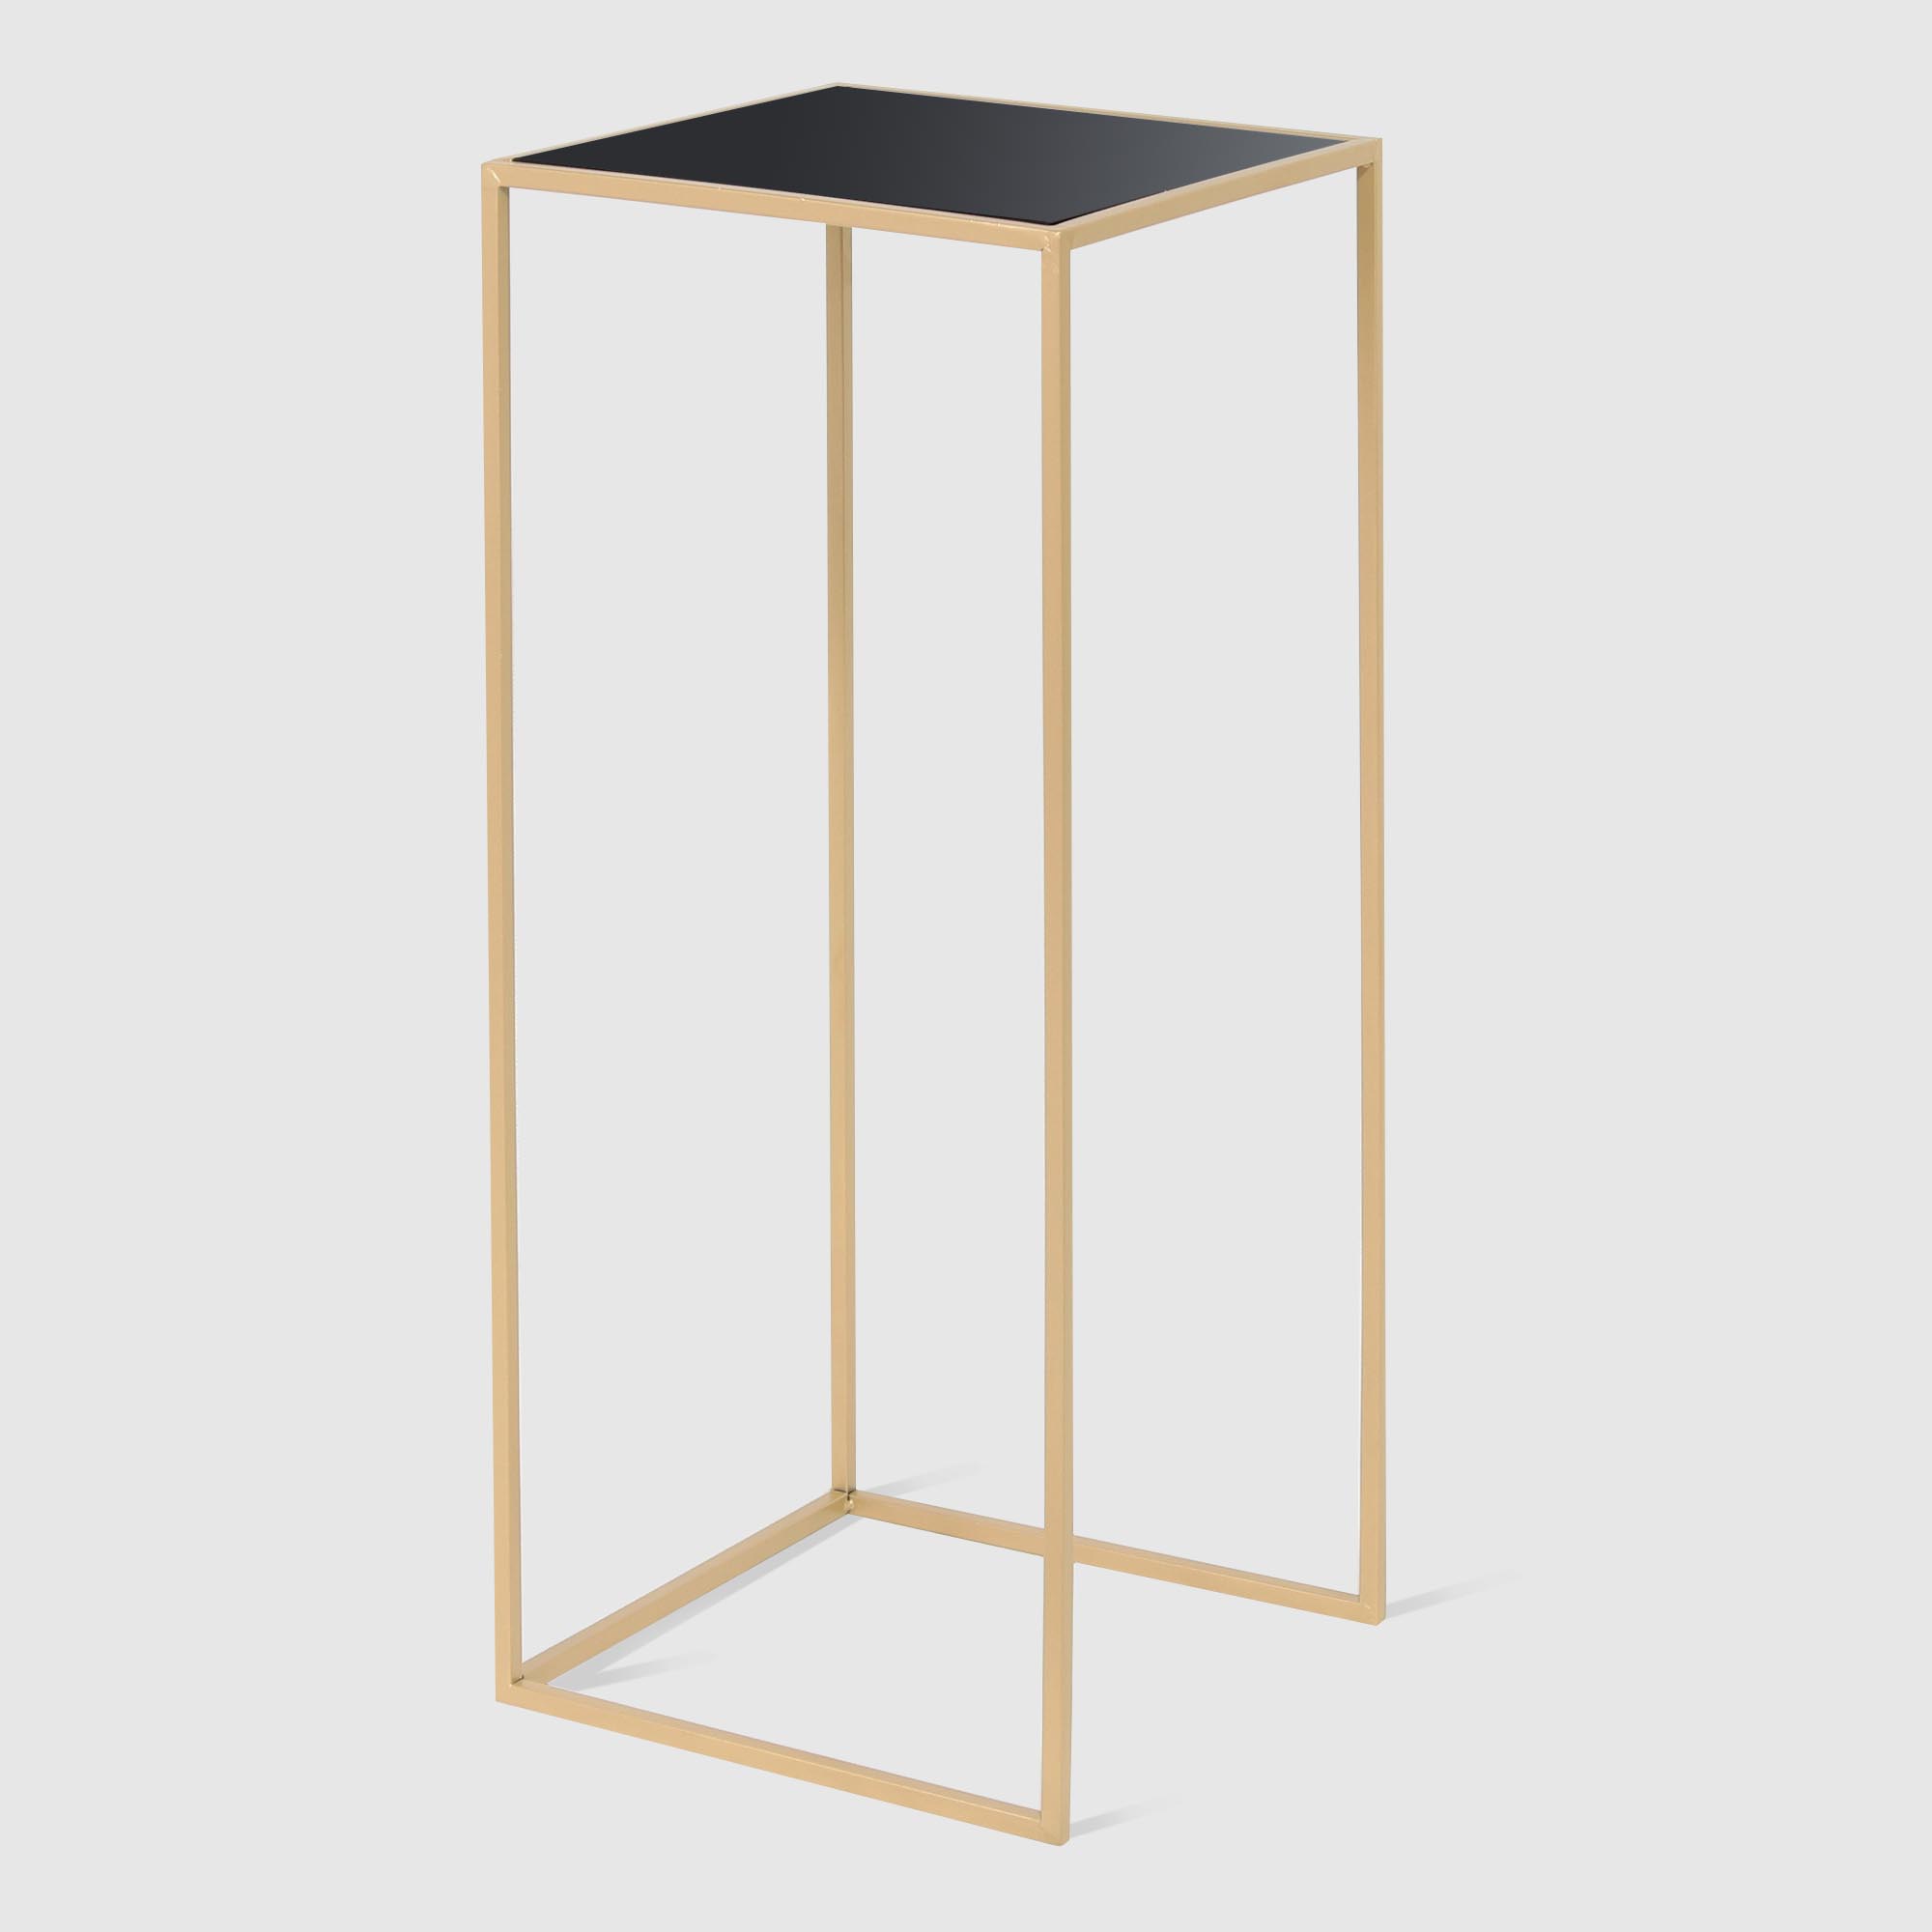 Набор столиков Ad trend furniture 60/70 см 2 шт золото, металл, цвет золотистый - фото 2